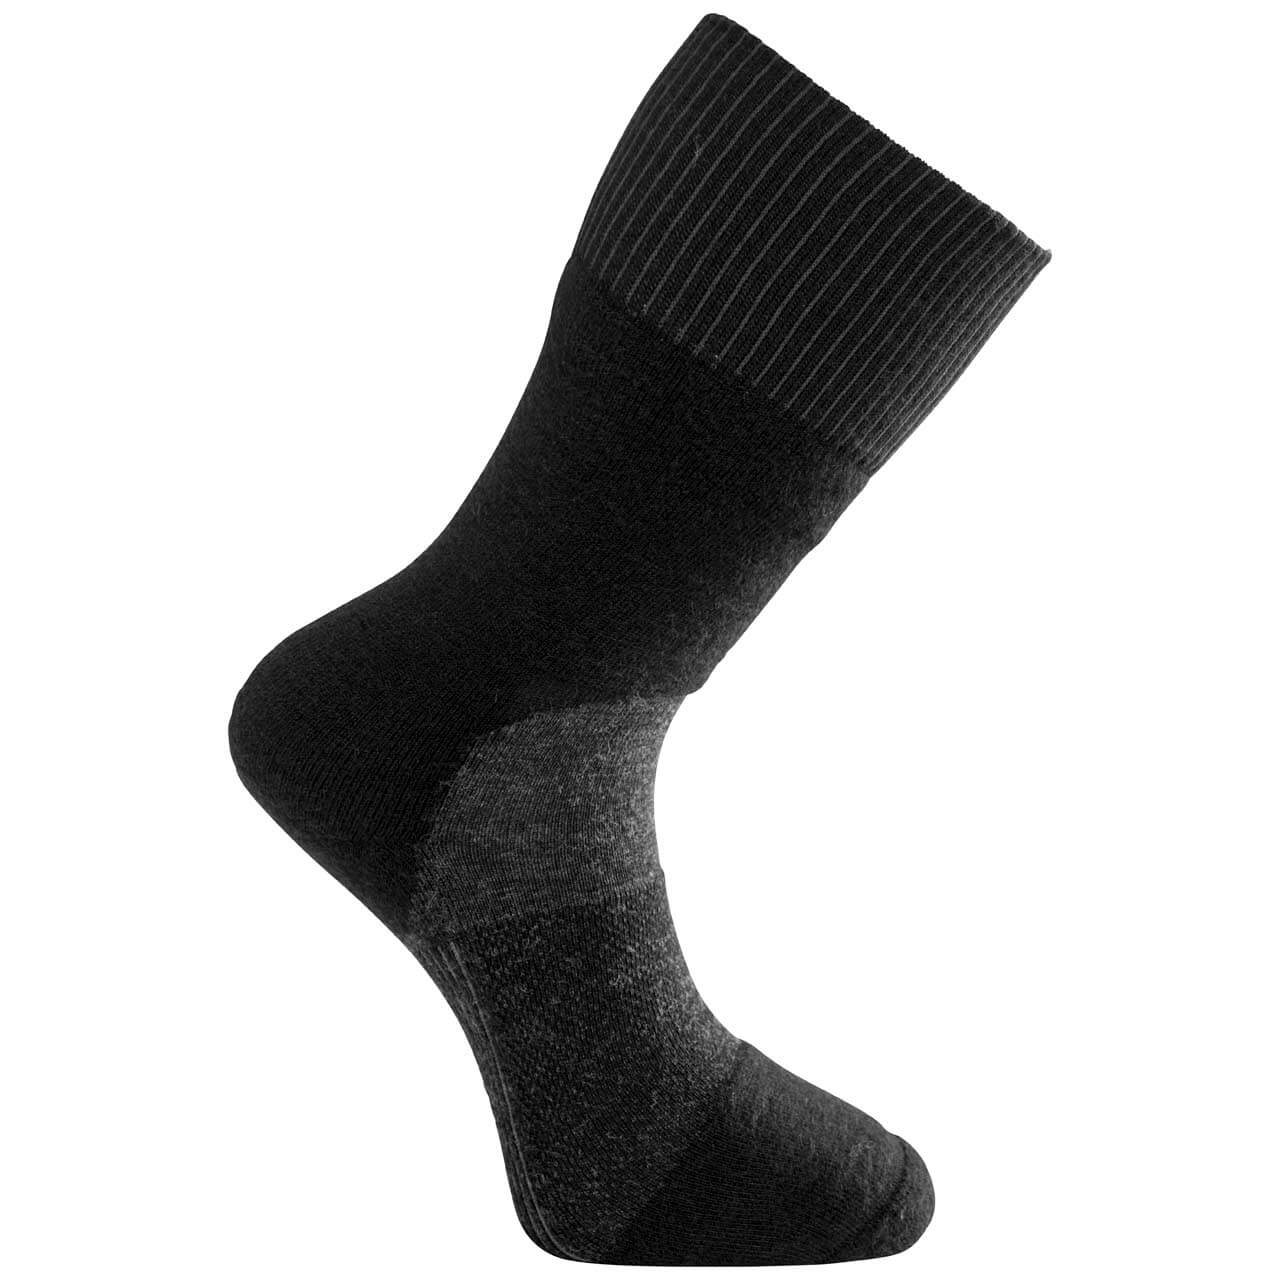 Woolpower Skilled Socken 400 - Black/Dark Grey, 45-48 von Woolpower